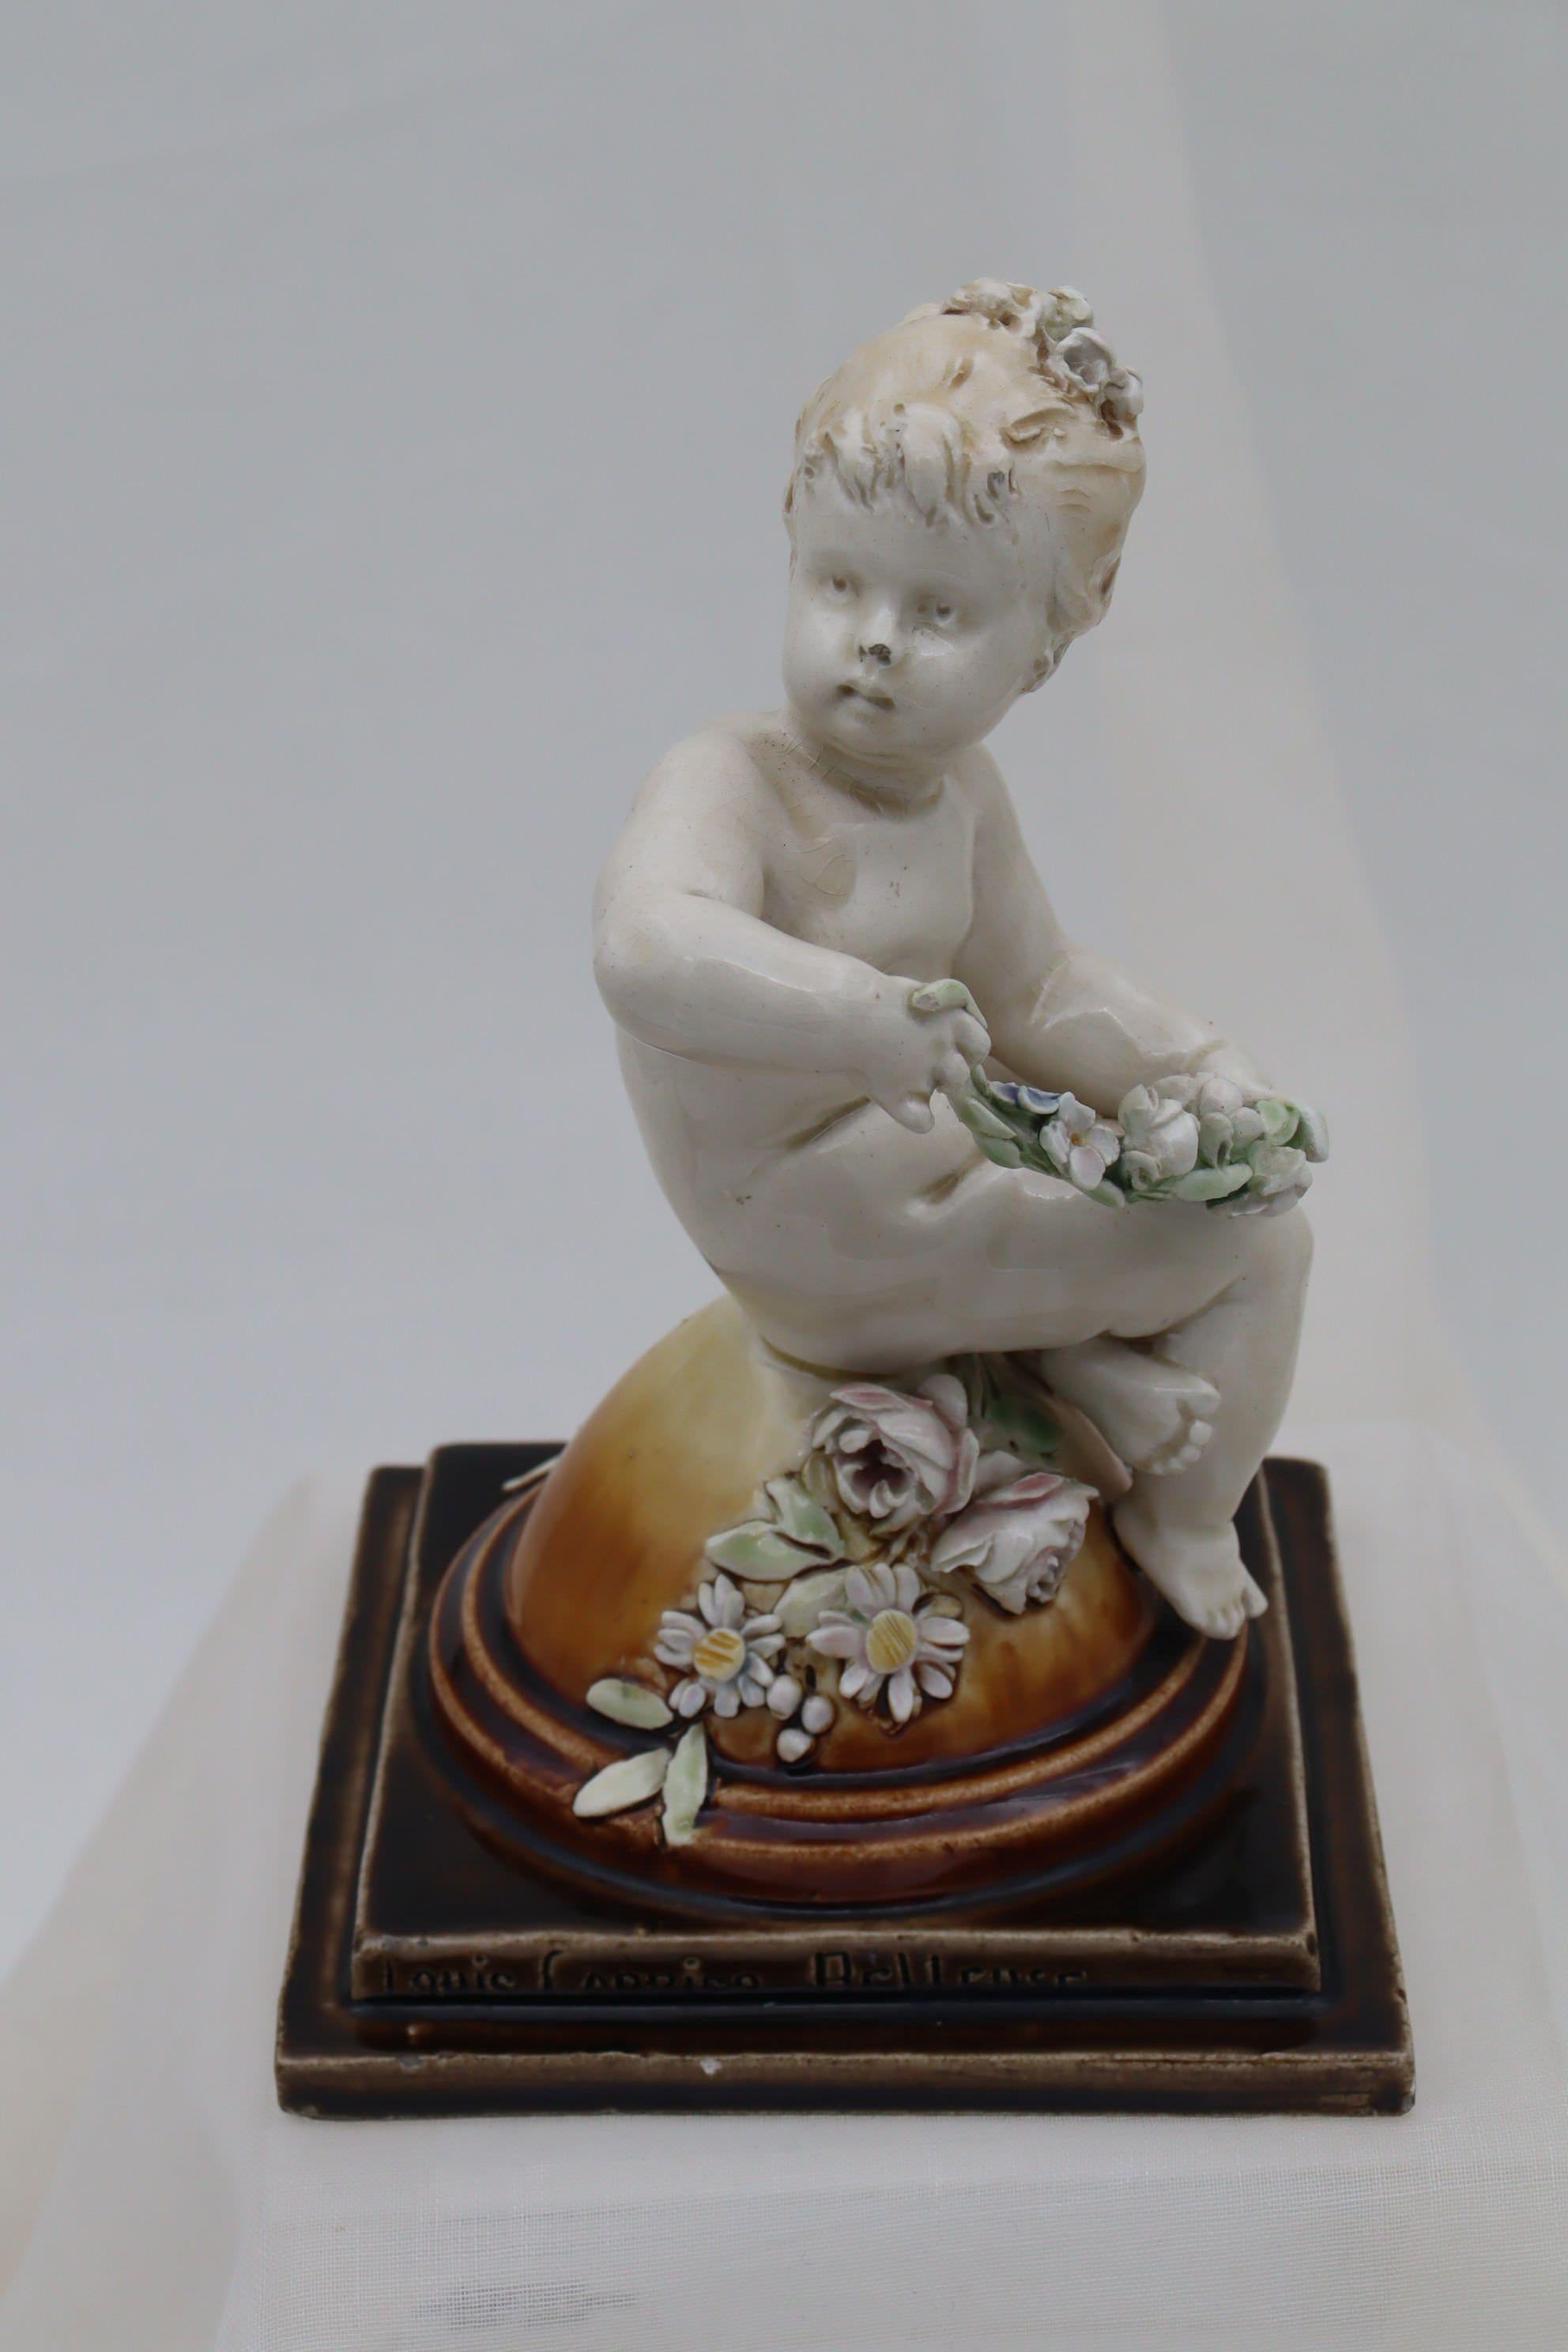 Diese Engelsfigur wurde von Louis Carrier-Belleuse (1848-1913) für die Fabrik Choisy du Roi modelliert. Die Putte sitzt im Schneidersitz auf einer Kuppel und hält einen Blumenstrauß, während ein weiterer Blumenstrauß auf der Kuppel unter ihr ruht.